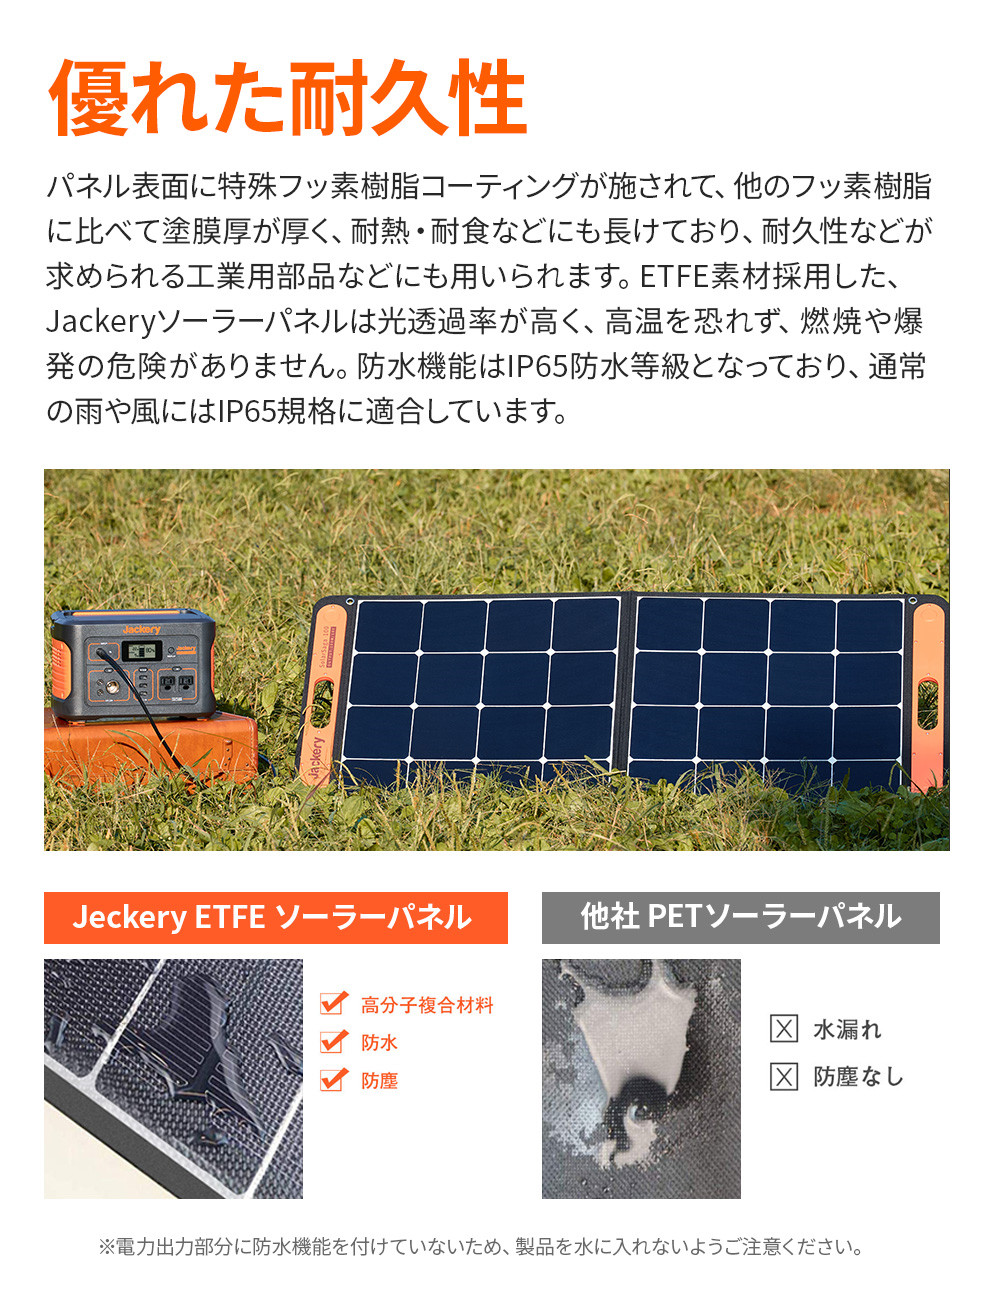 [予約可能]Jackery SolarSaga 100 ソーラーパネル 100W ソーラーチャージャー折りたたみ式 DC/USB スマホやタブレット  23% 超薄型 軽量 コンパクト 単結晶 防災 IP65防水 (18V 5.55A) Jackery ポータブル電源用 | Jackery Japan  